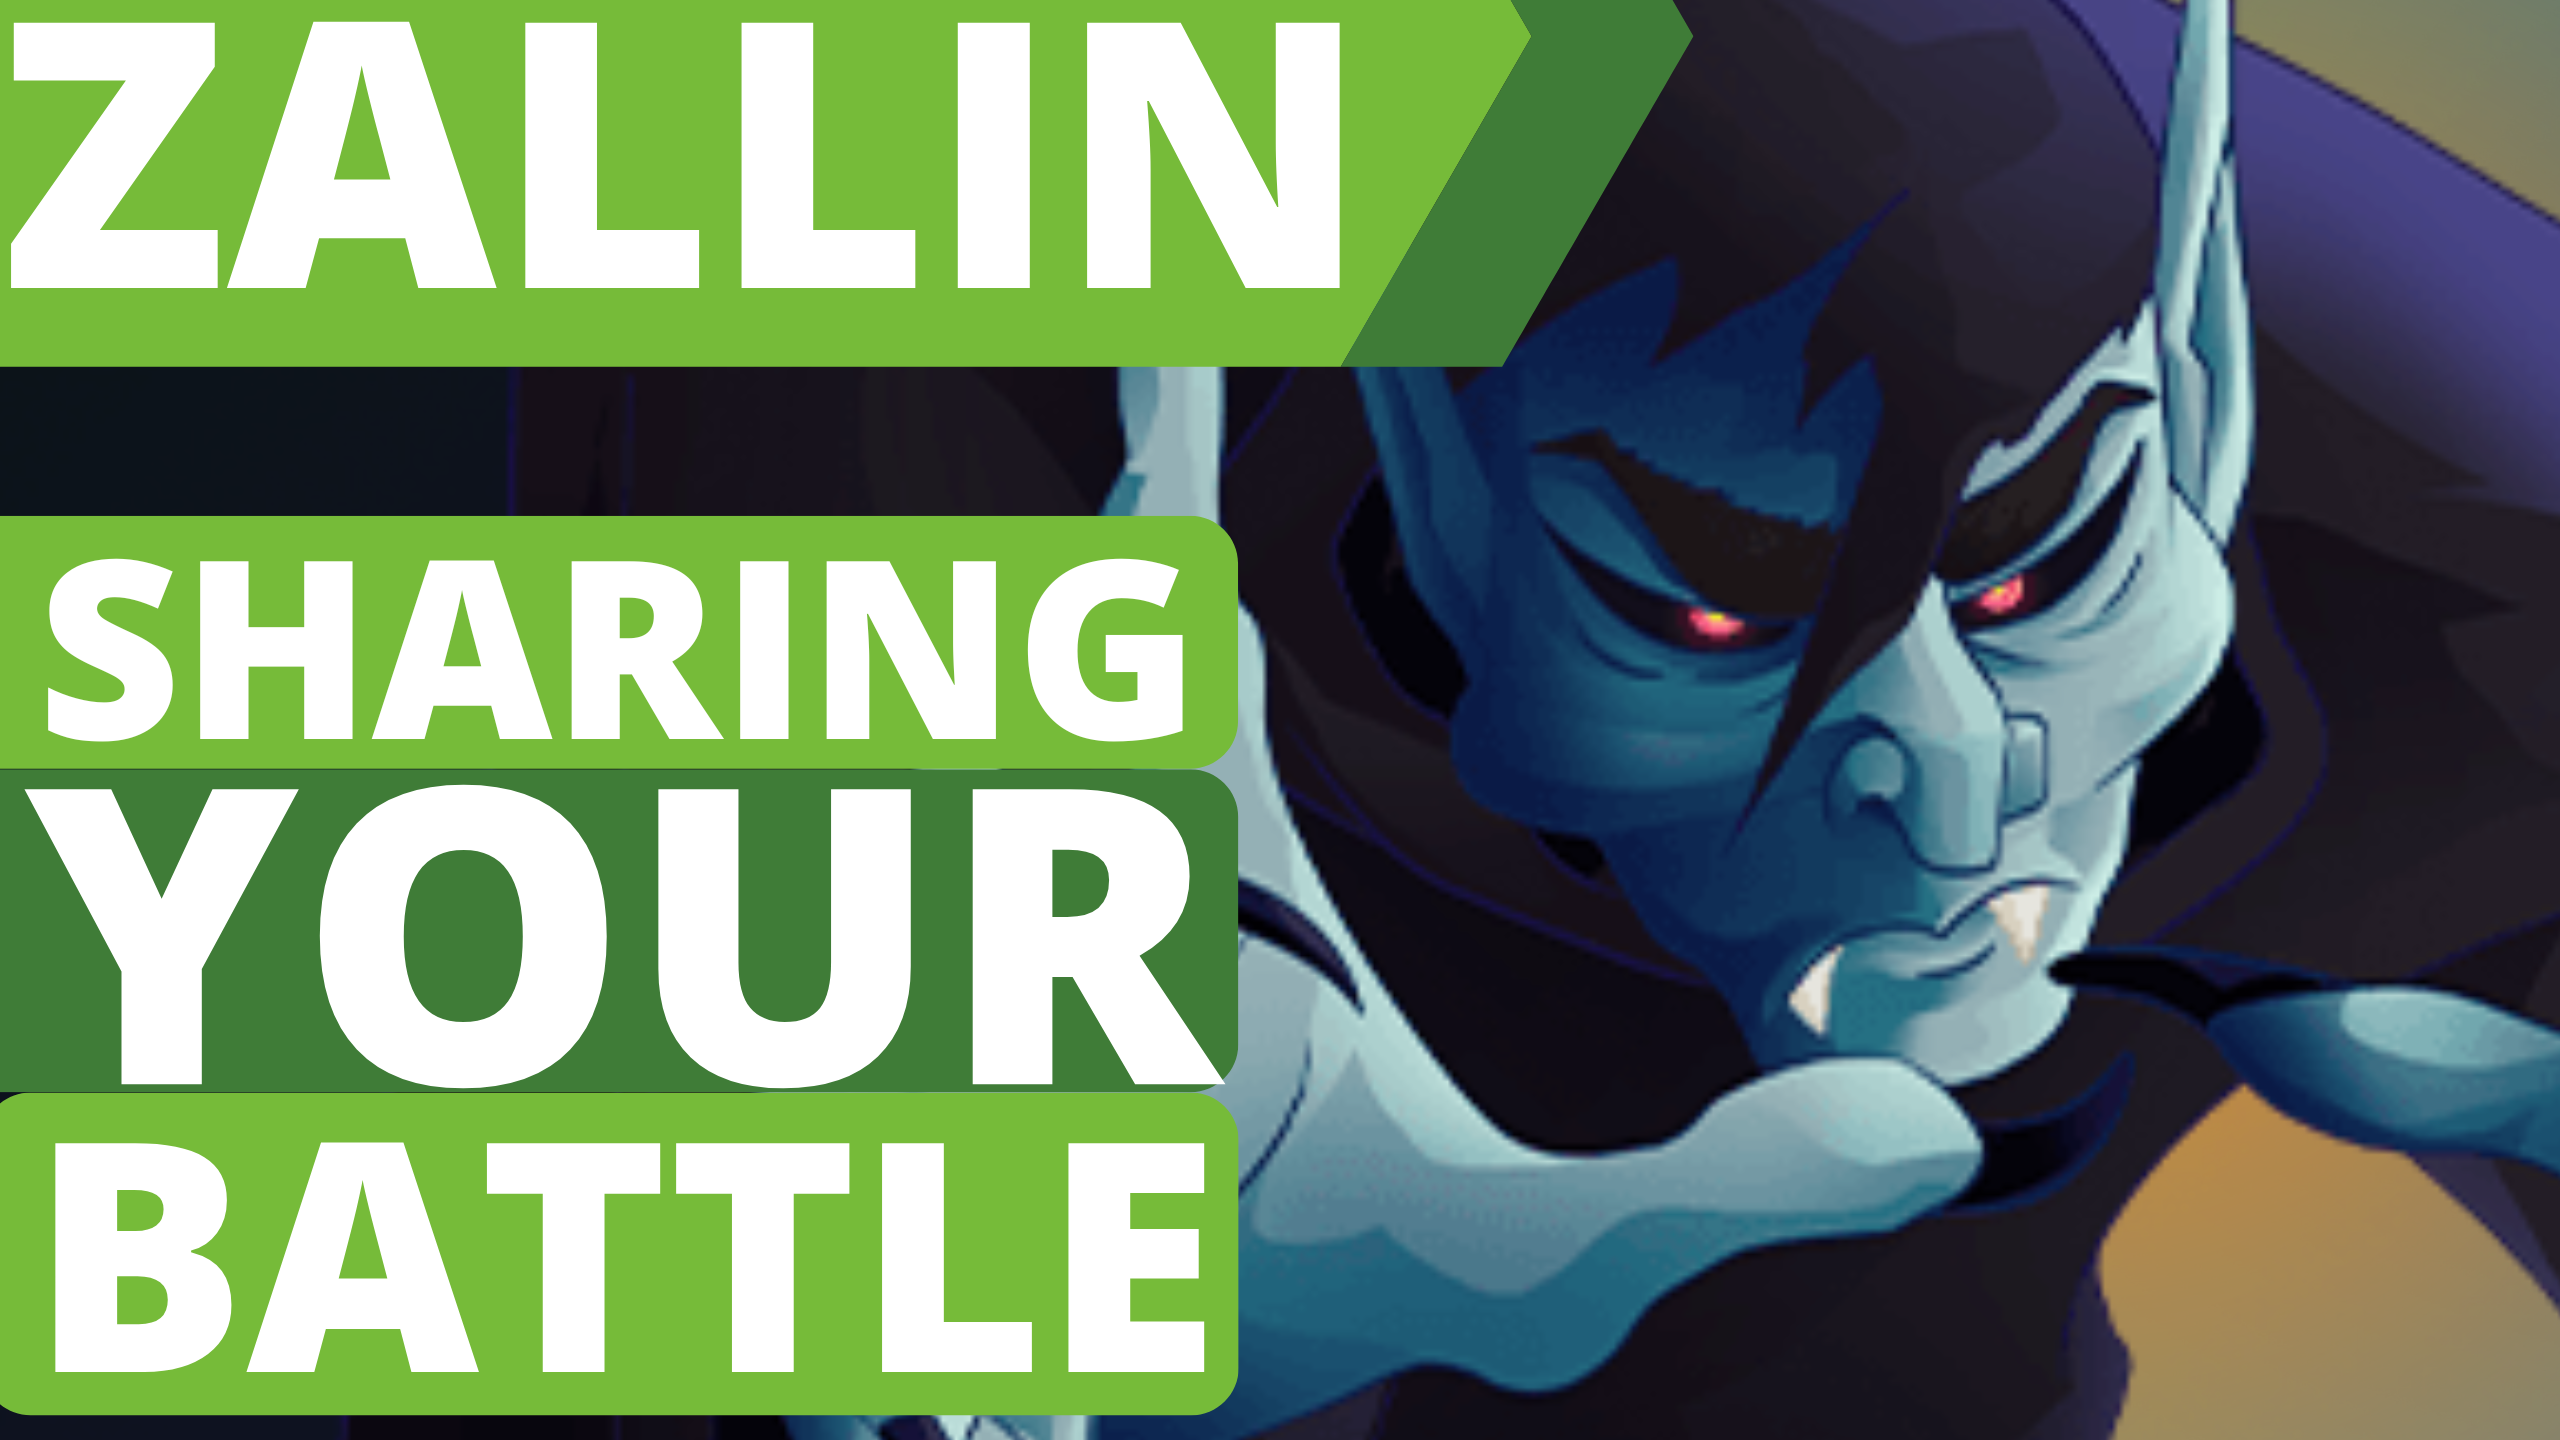 @zallin/zallin-share-your-battle-soul-strangler